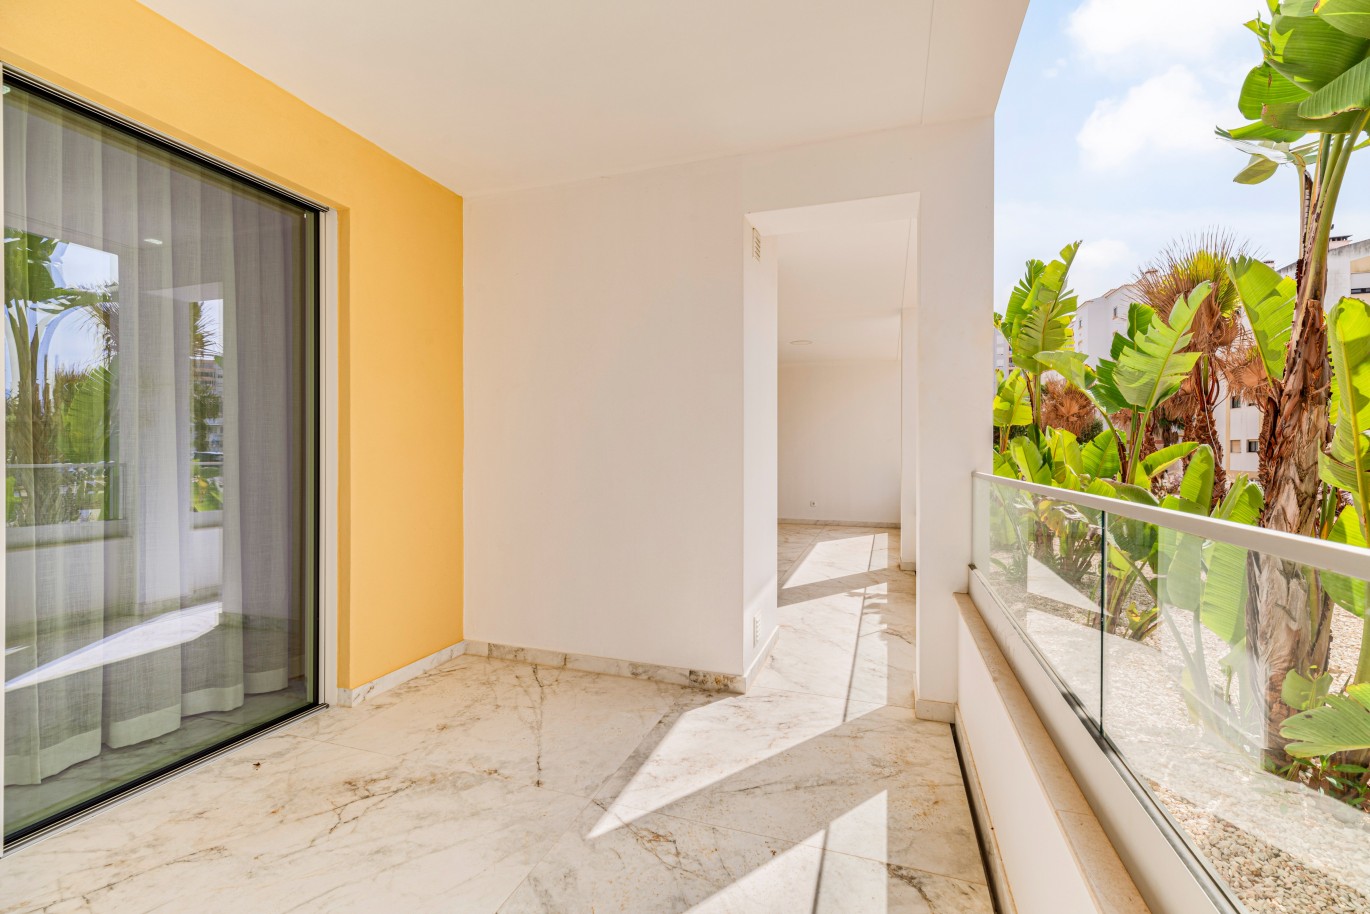 Apartamento, com terraço, para venda, em Lagos, Algarve_238378